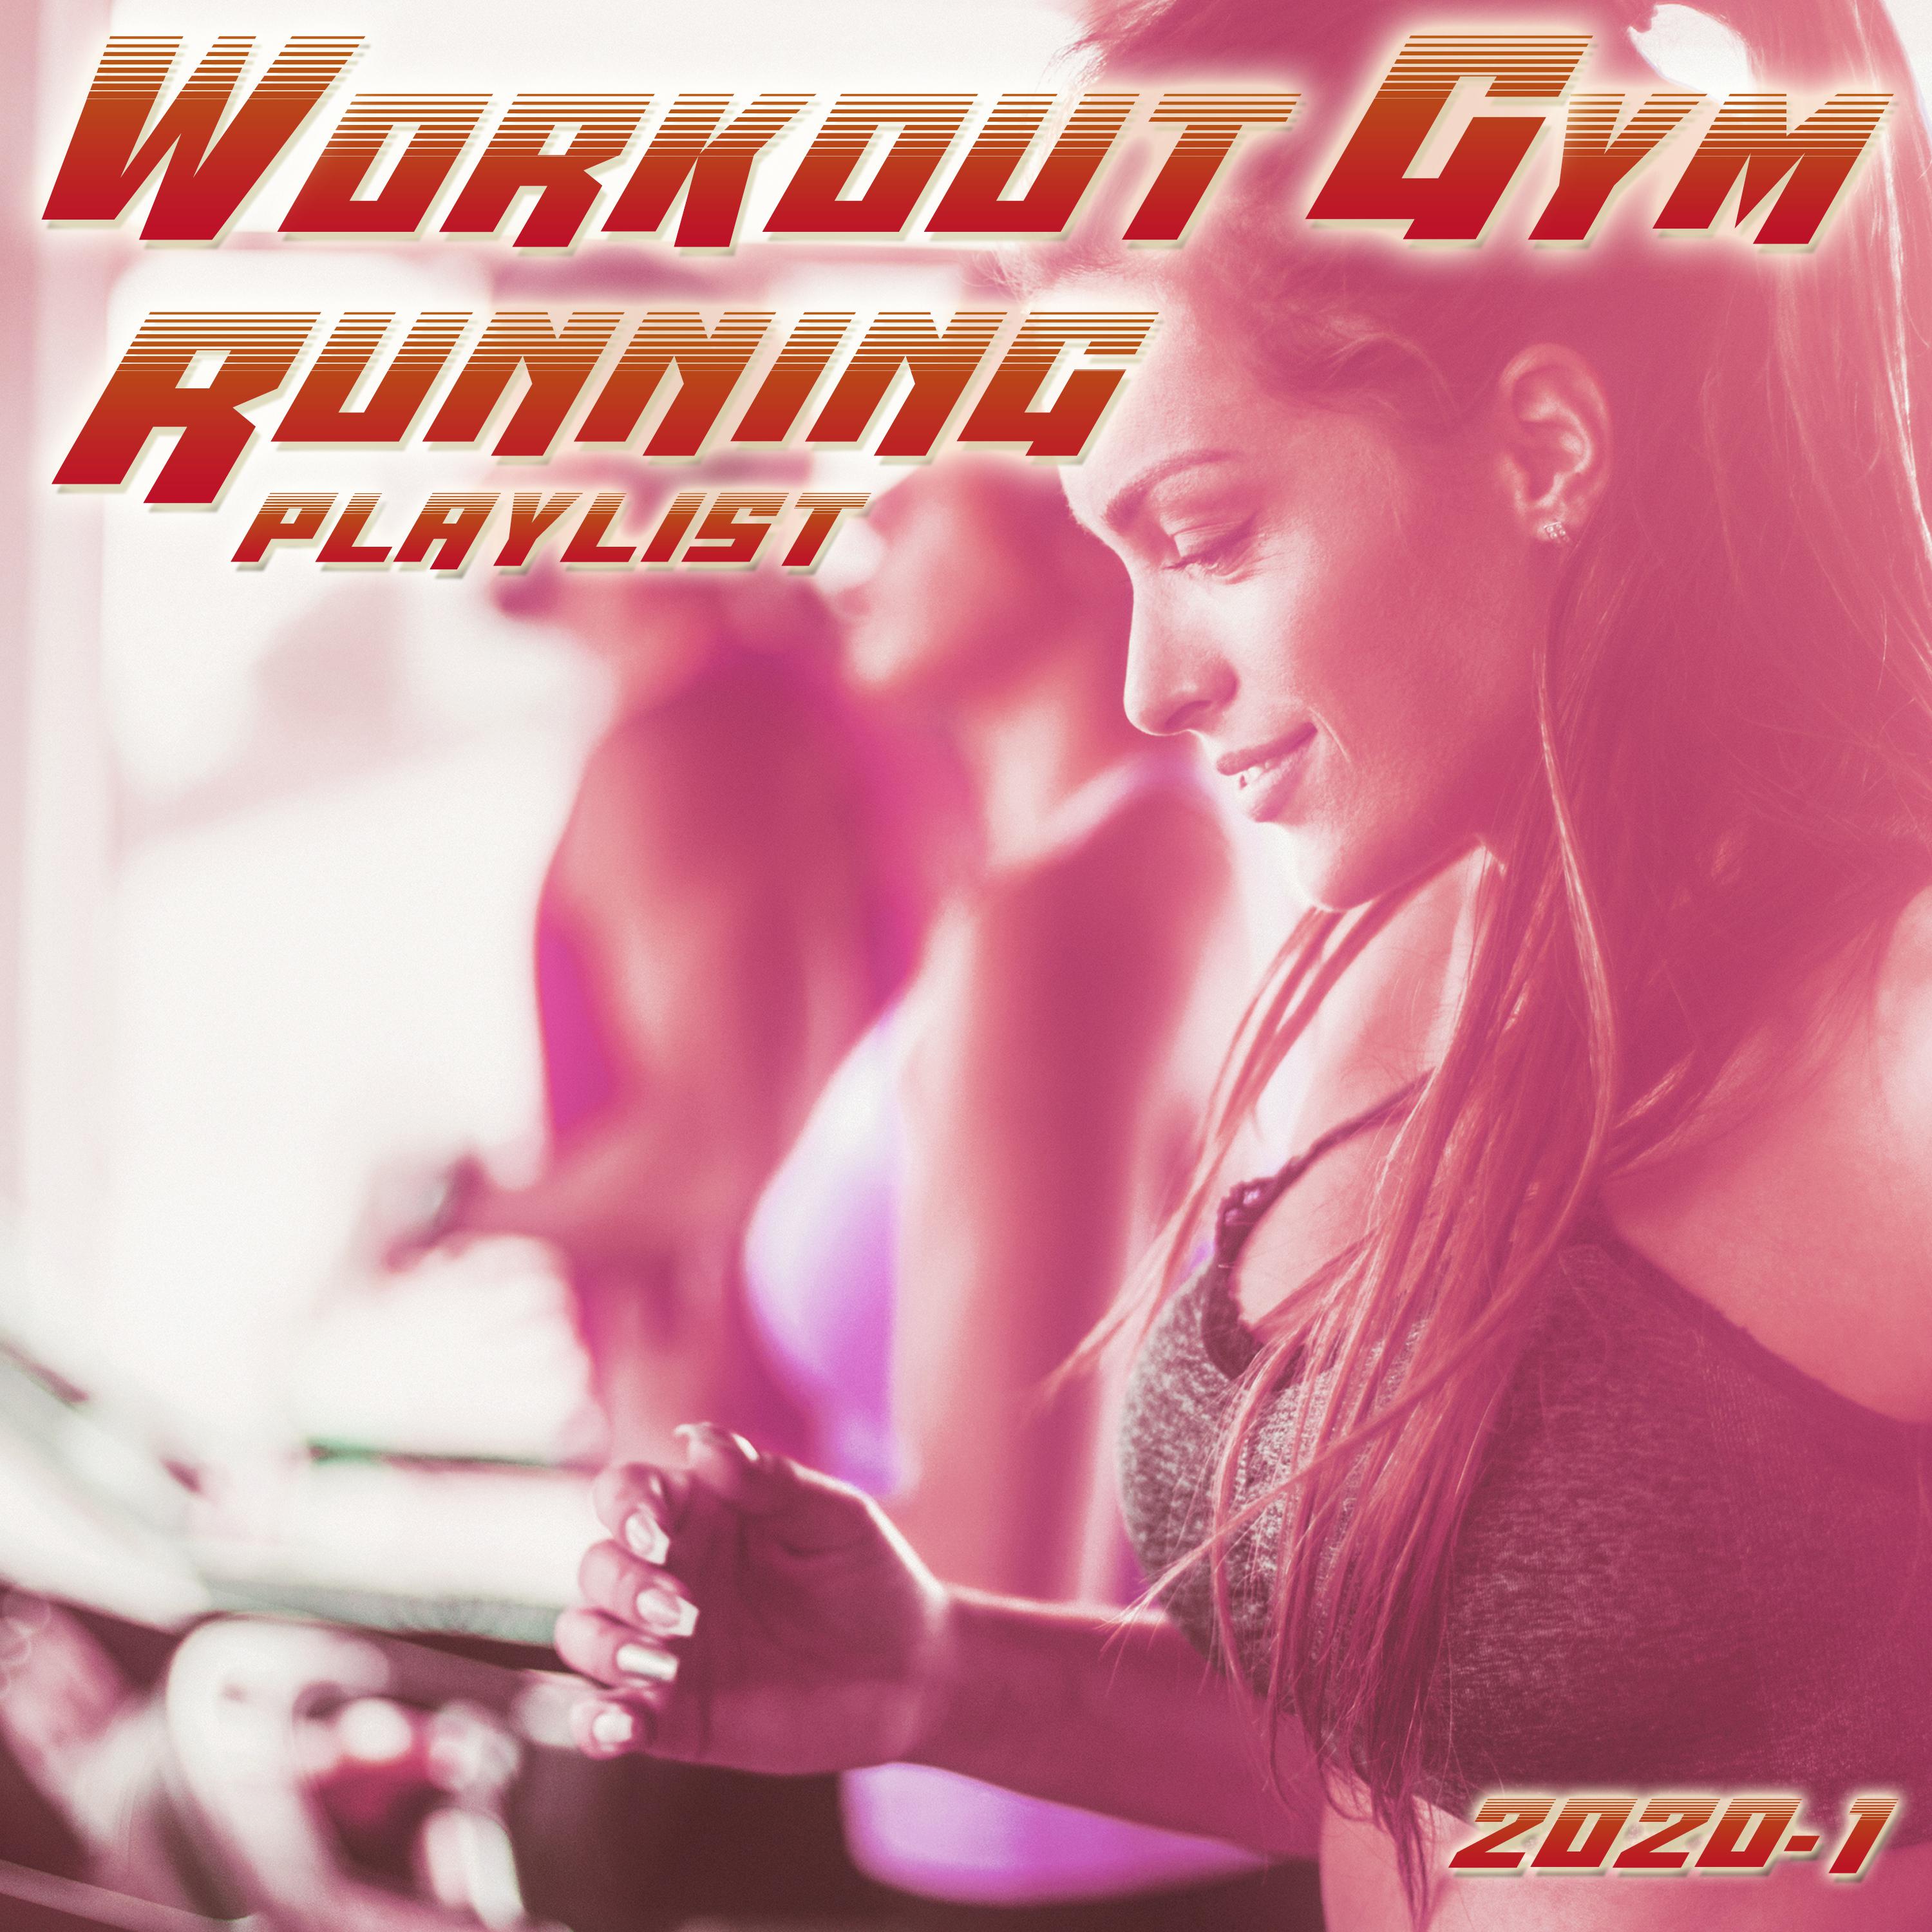 Ann Tourage - Alone, Pt. 2 (Workout Gym Mix 118 BPM)